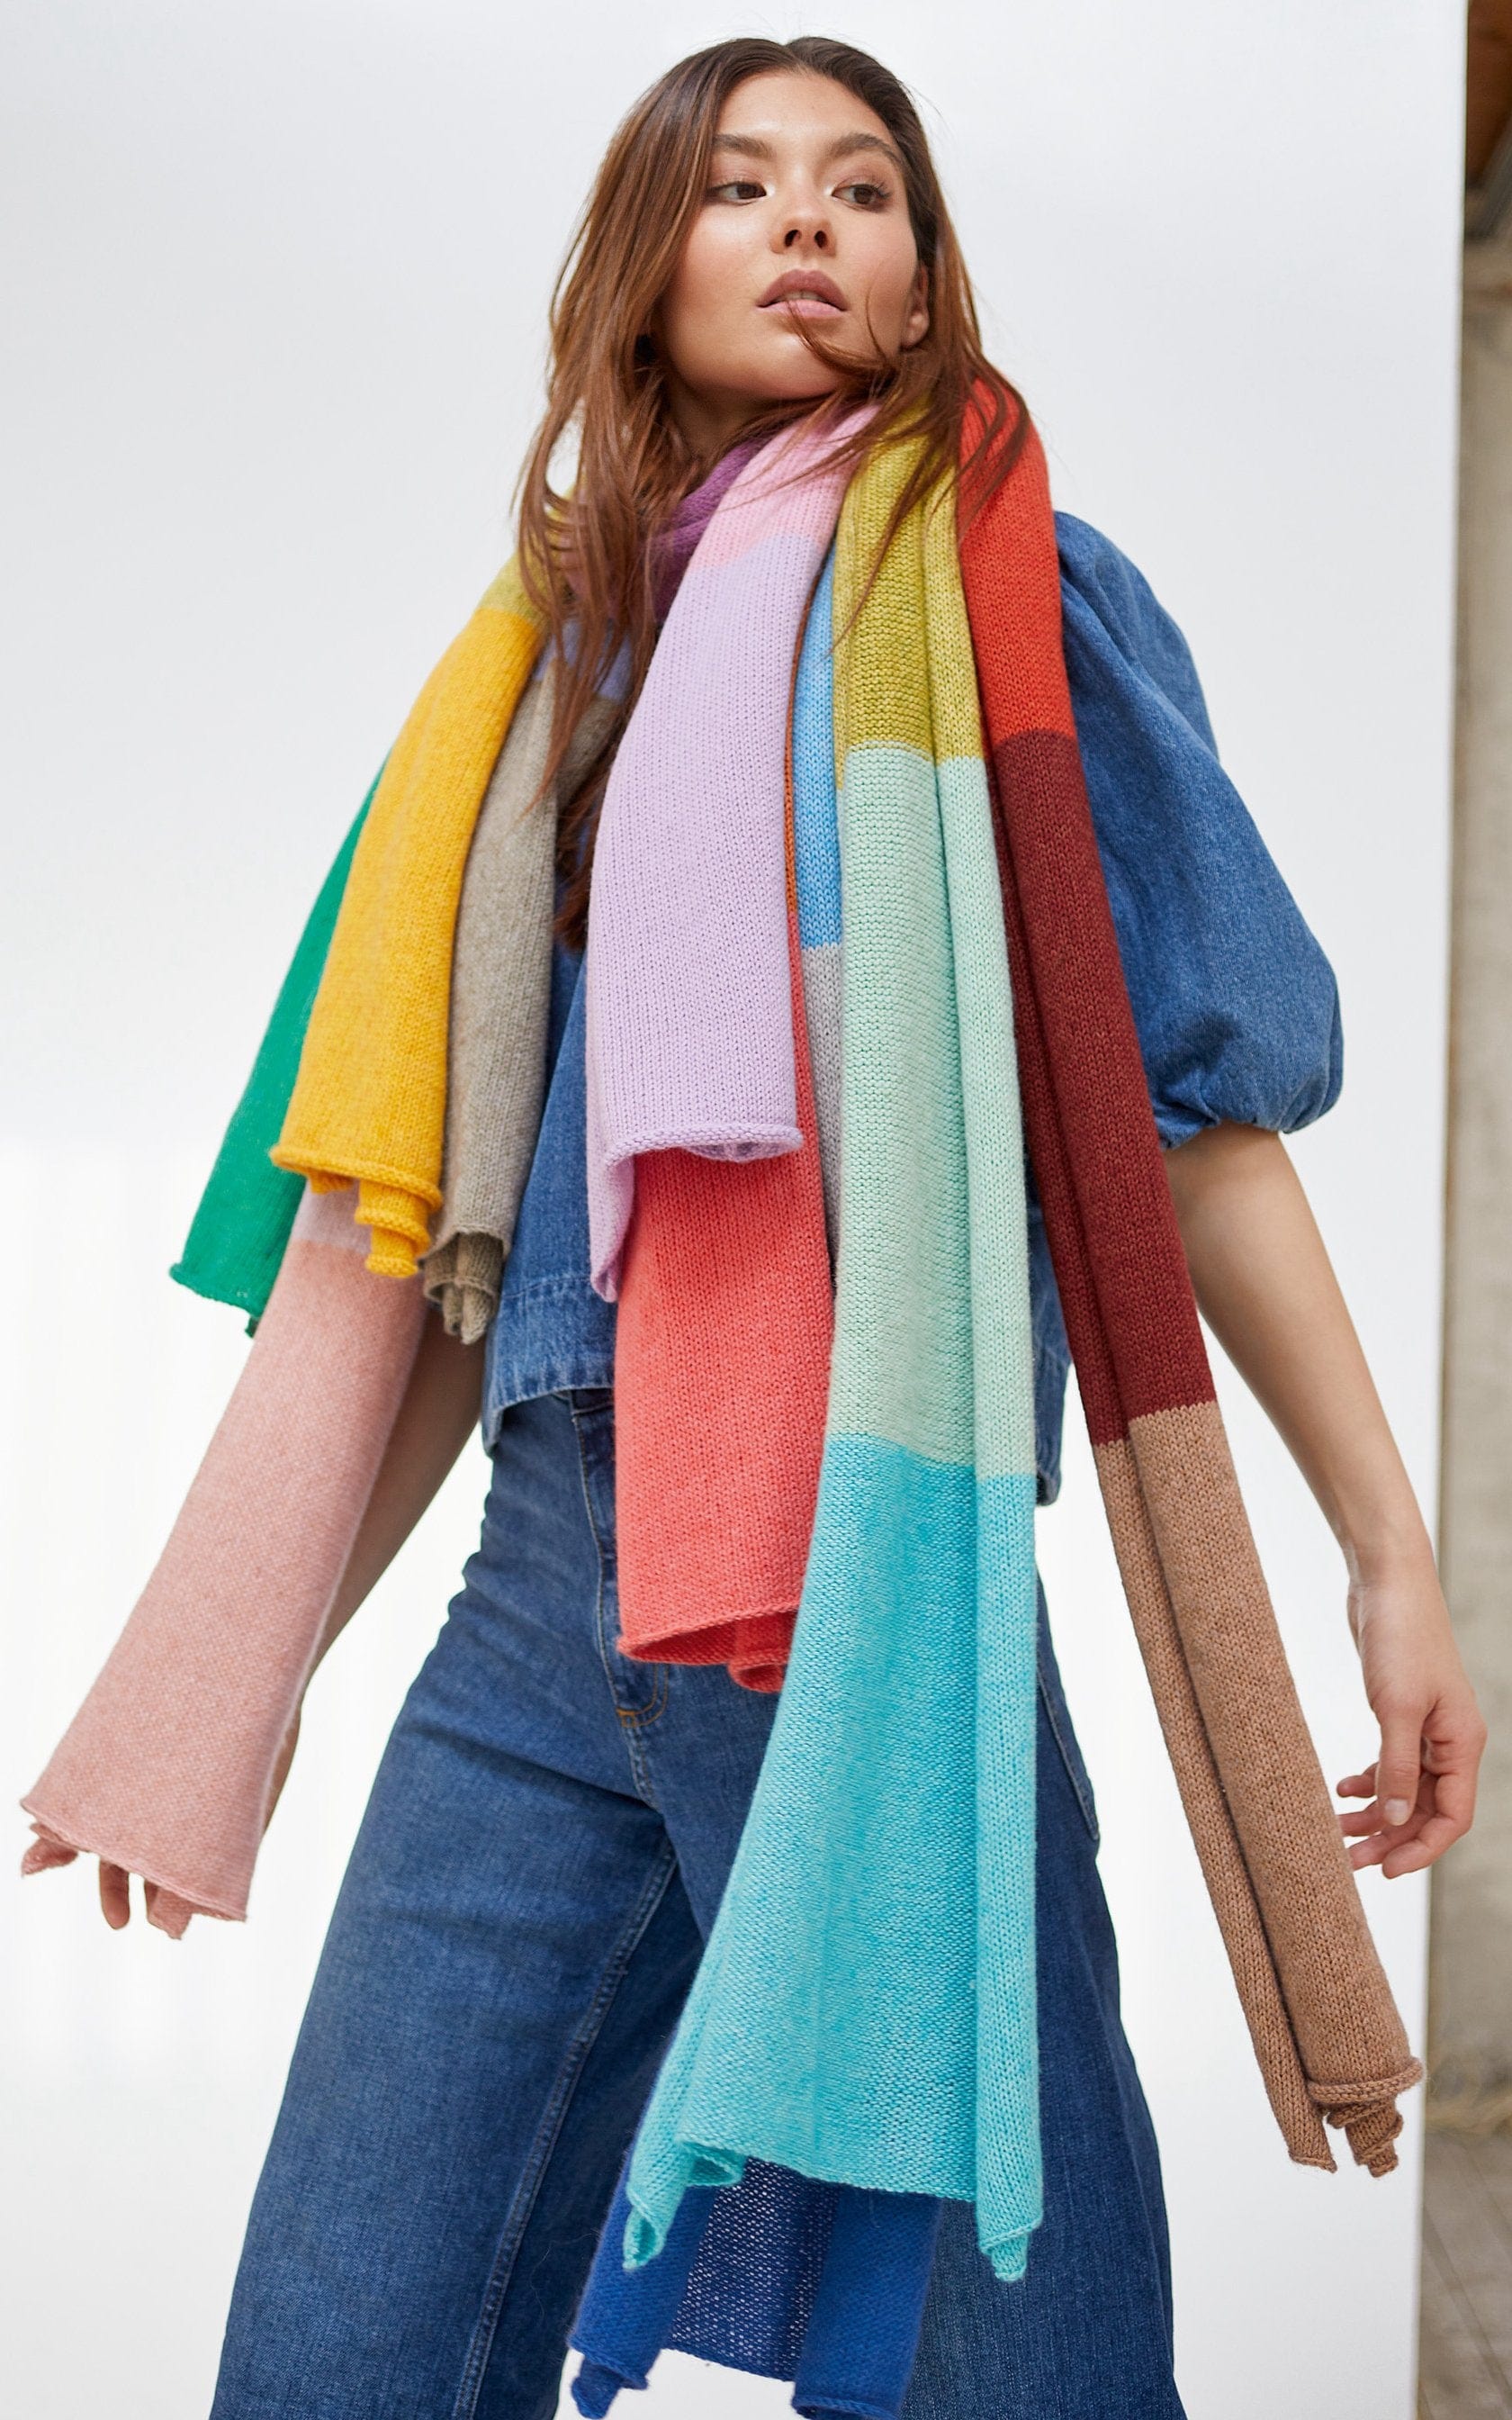 Schal mit Colorblocks - ECOPUNO - Strickset von LANA GROSSA jetzt online kaufen bei OONIQUE